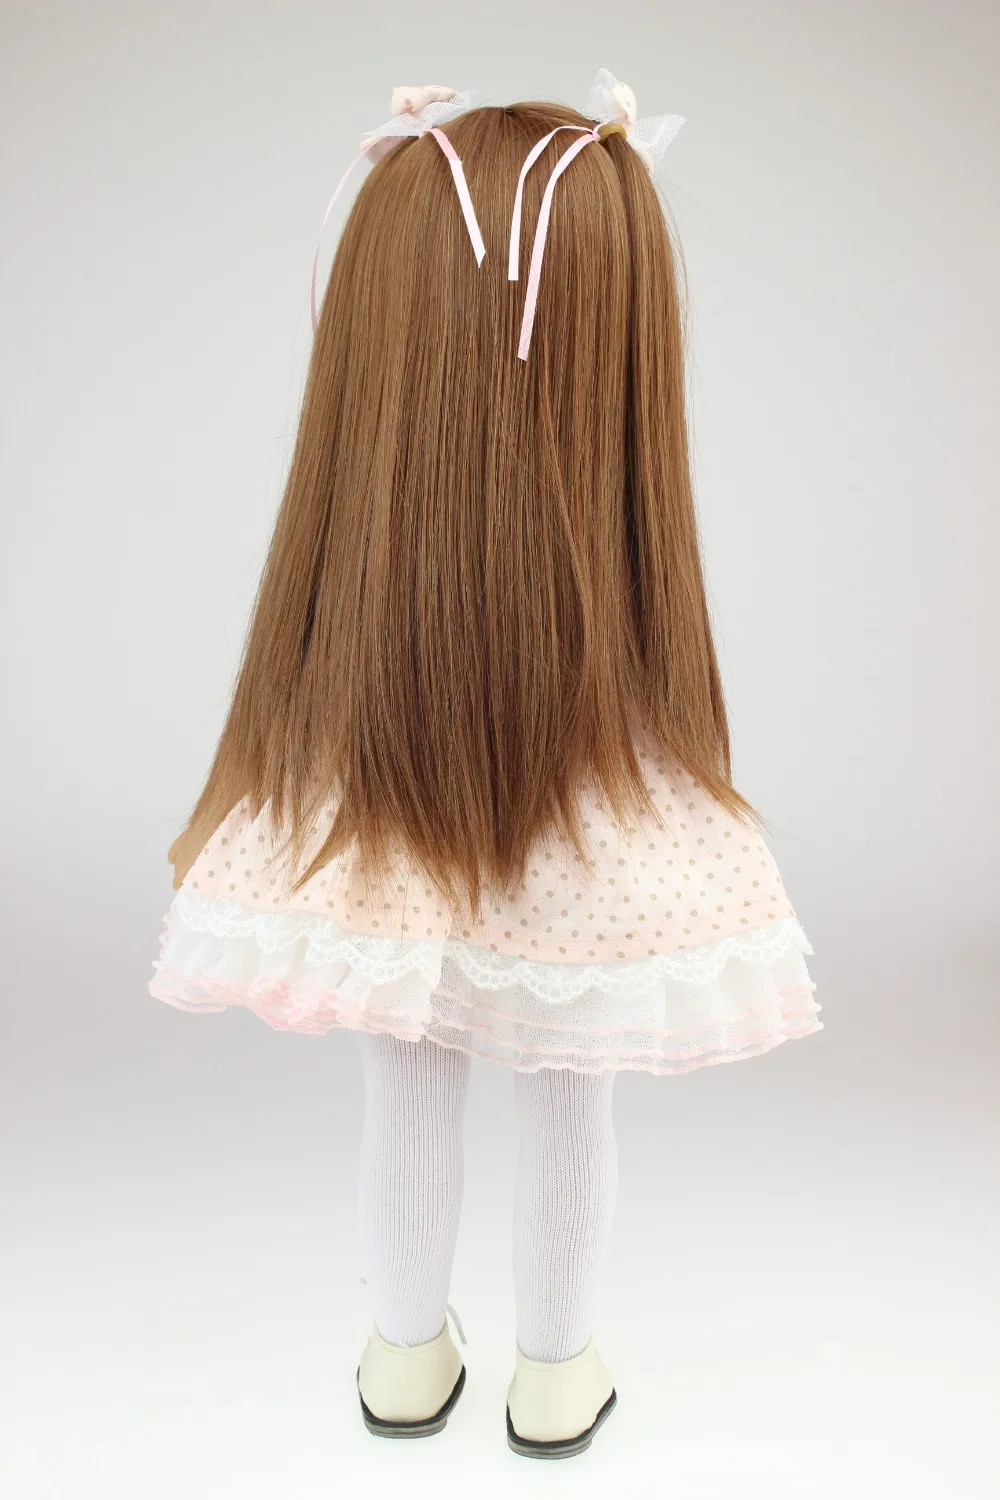 NPK дял 18-дюймовой куклы для девочек, модное платье для девочек кукла с розовая юбка, обучающая игрушка для девушки подарок Лидер продаж Редкие ограниченный выпуск